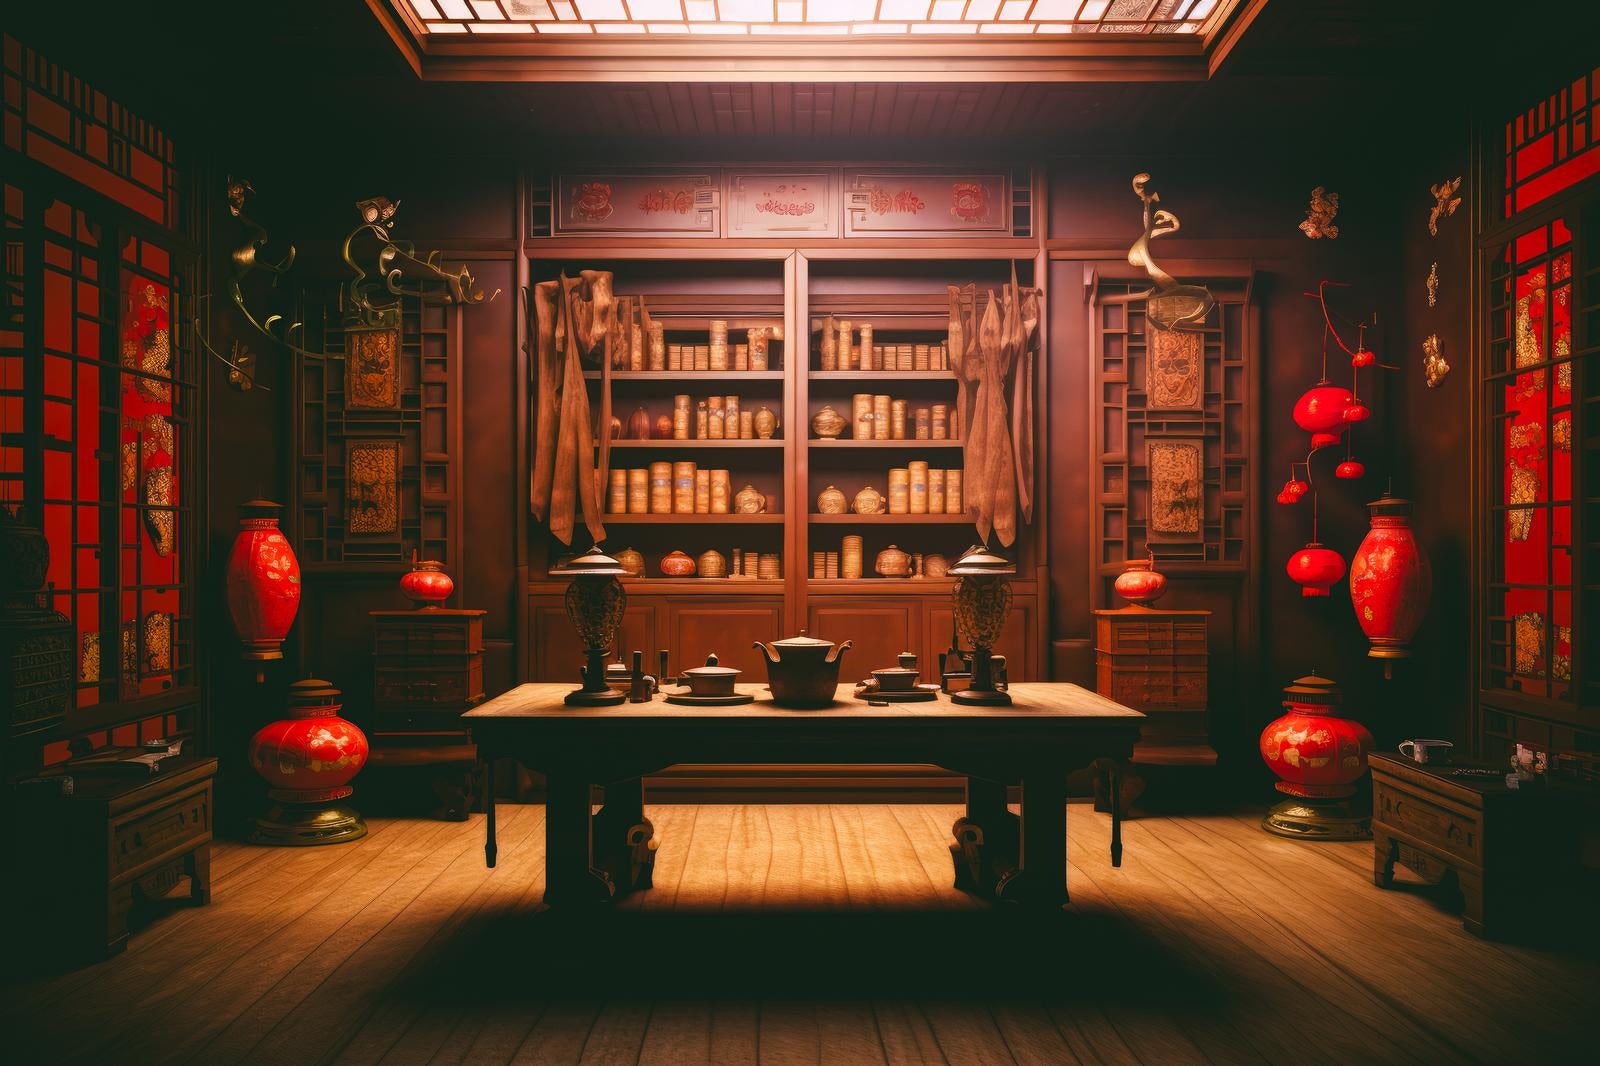 「伝統と現代が交差する中華風の美」の写真